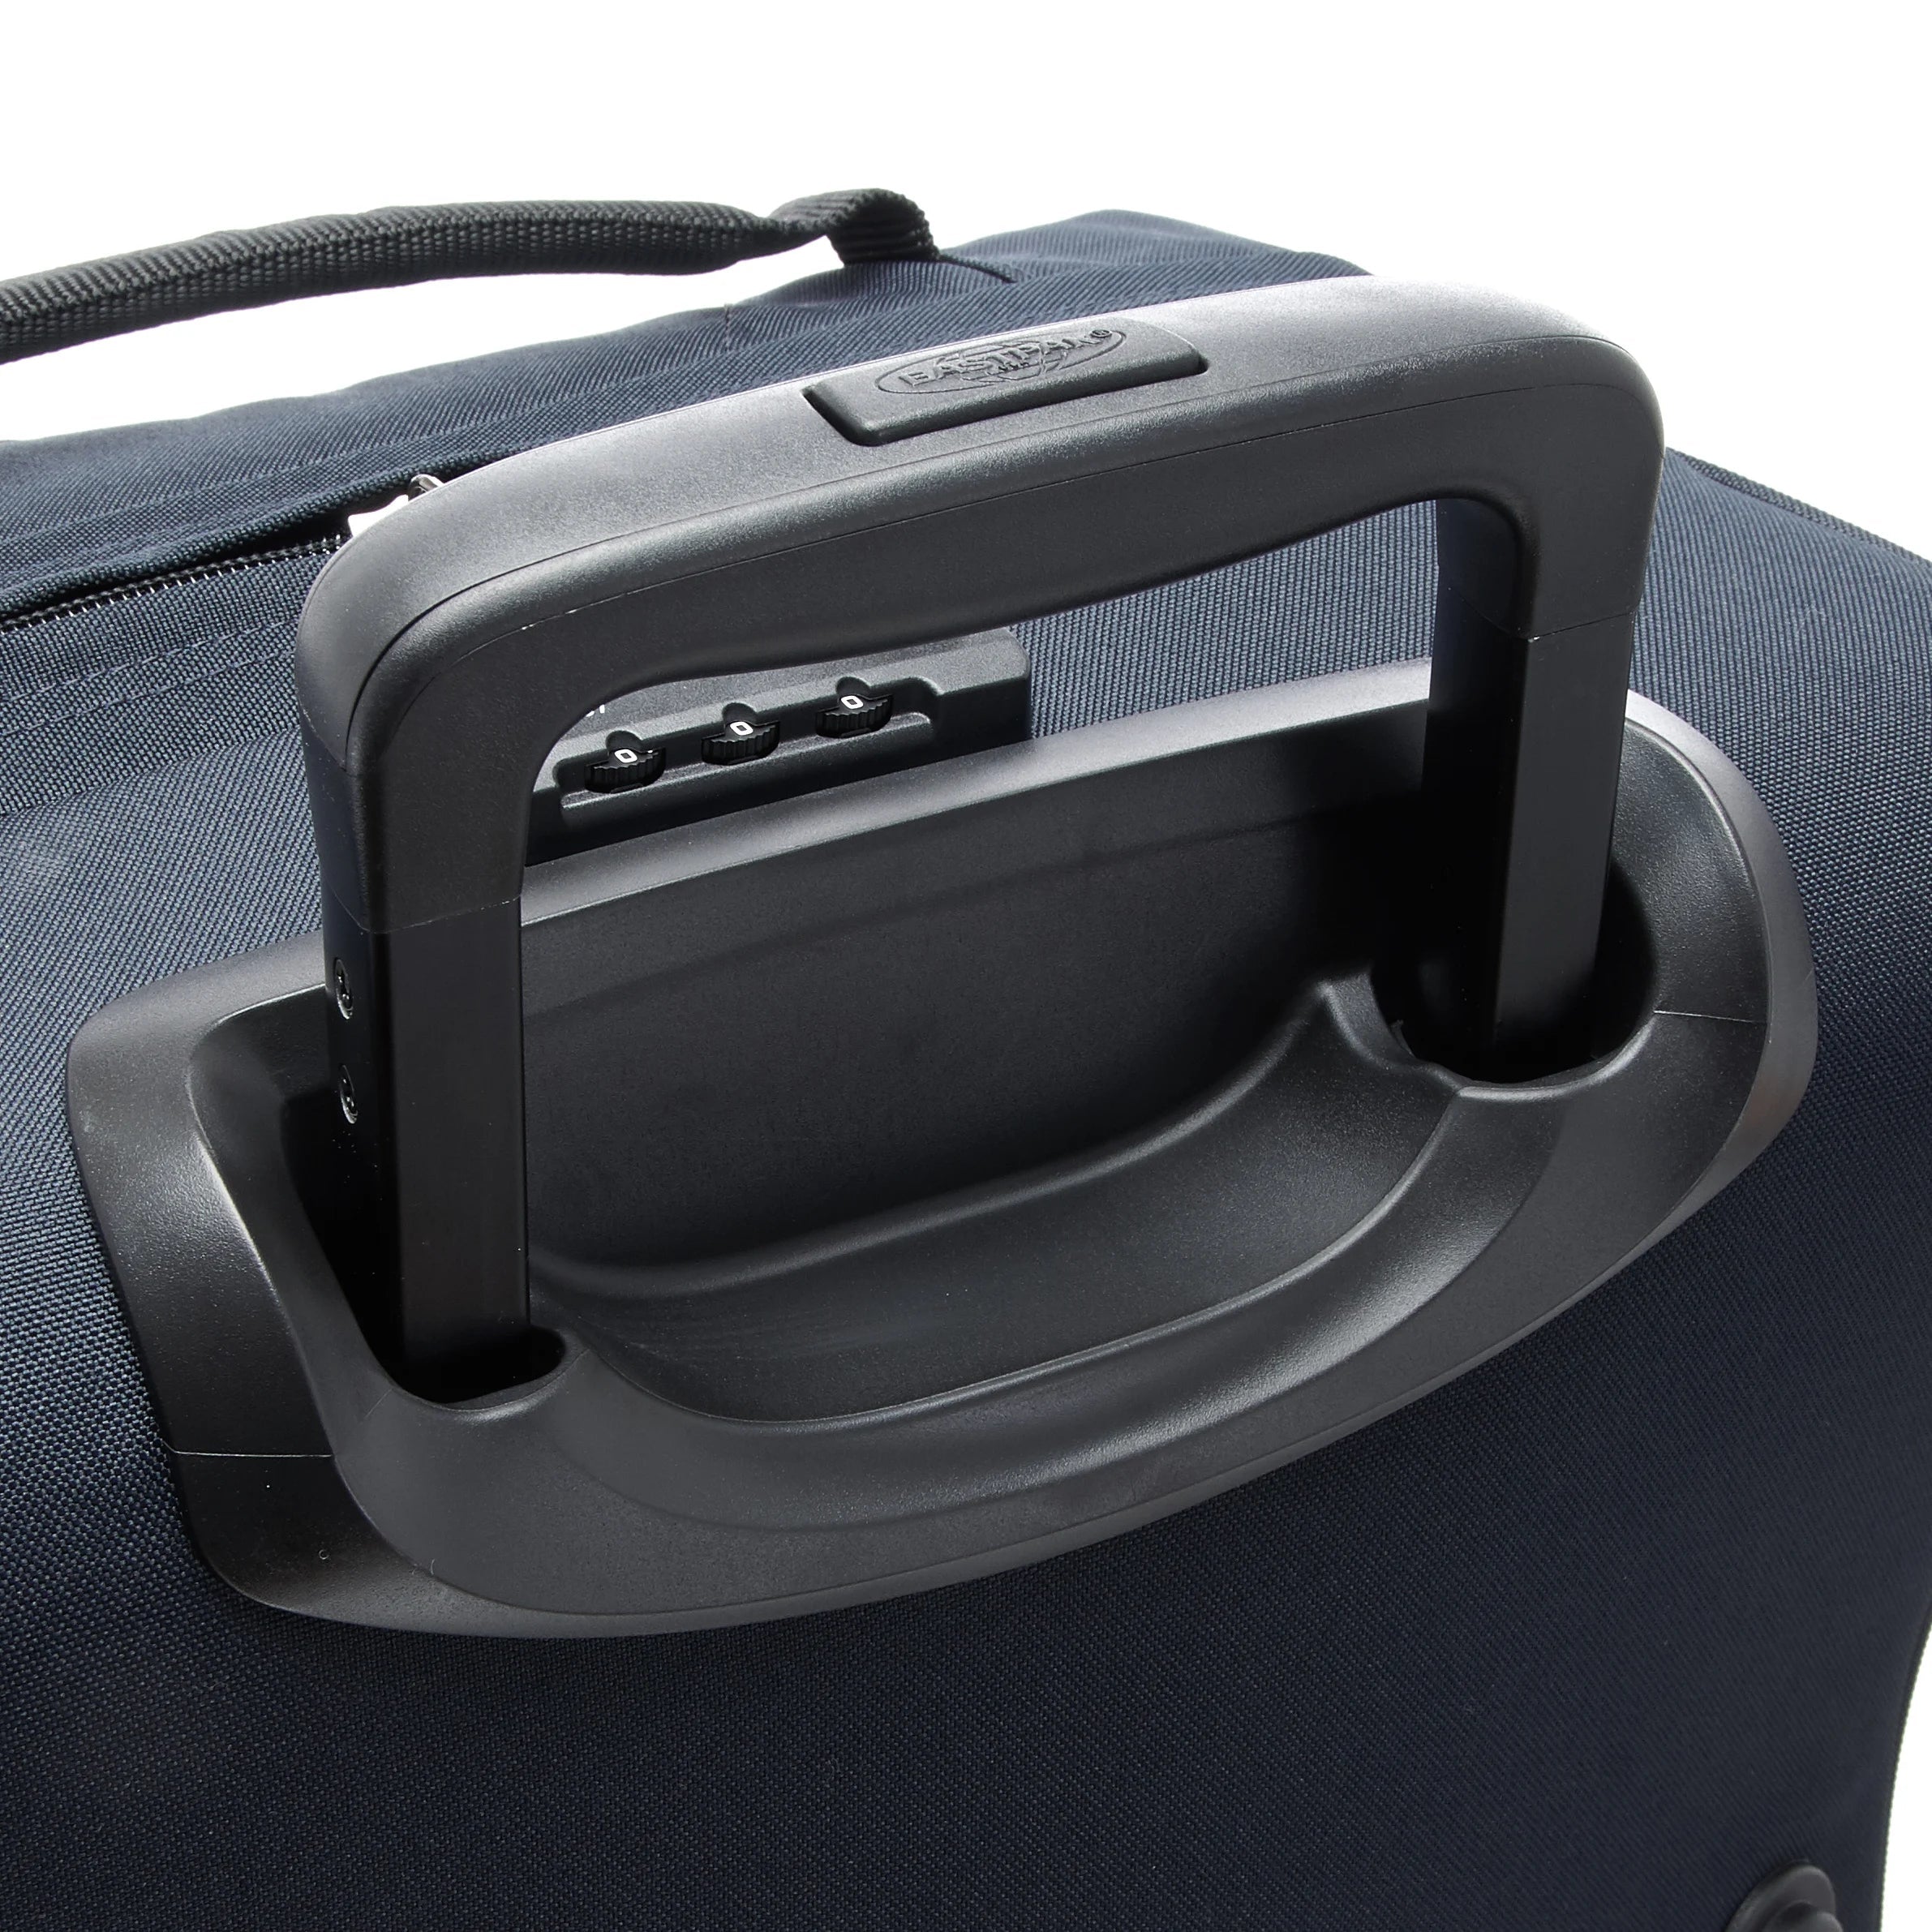 Eastpak Authentic Travel Tranverz valise cabine 2 roues 51 cm - noir